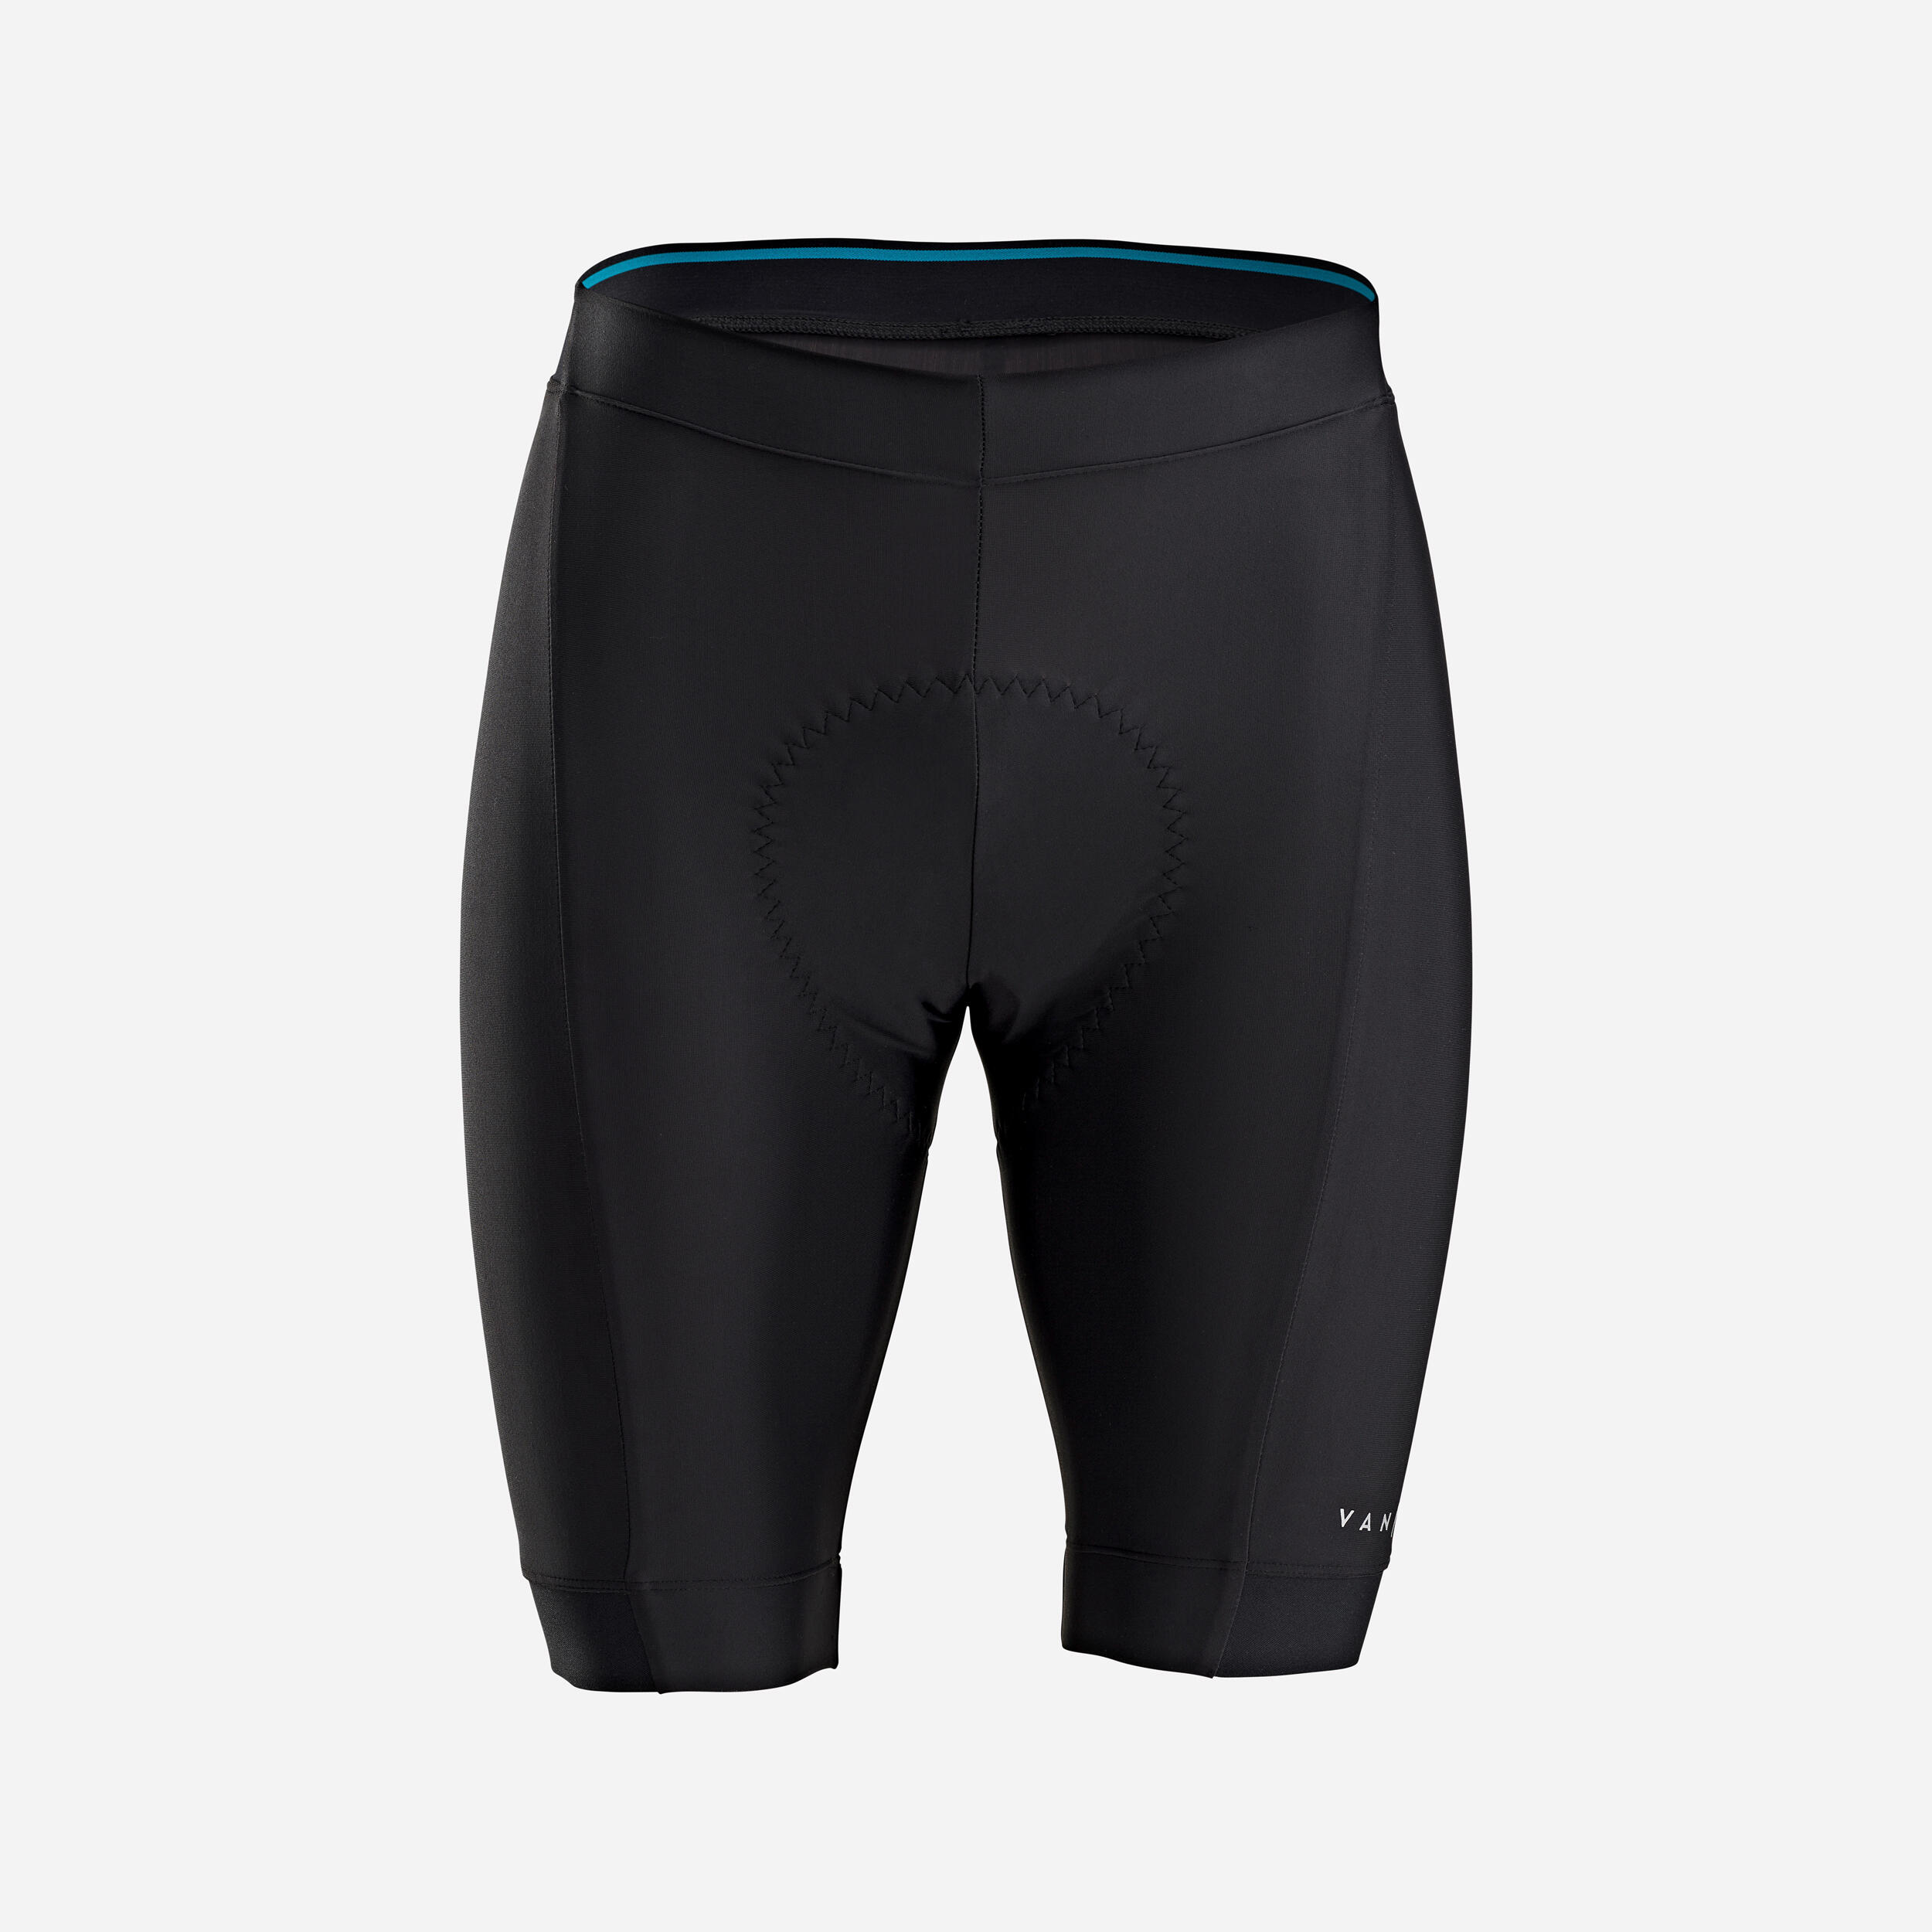 RC 100 cycling shorts - Men - VAN RYSEL